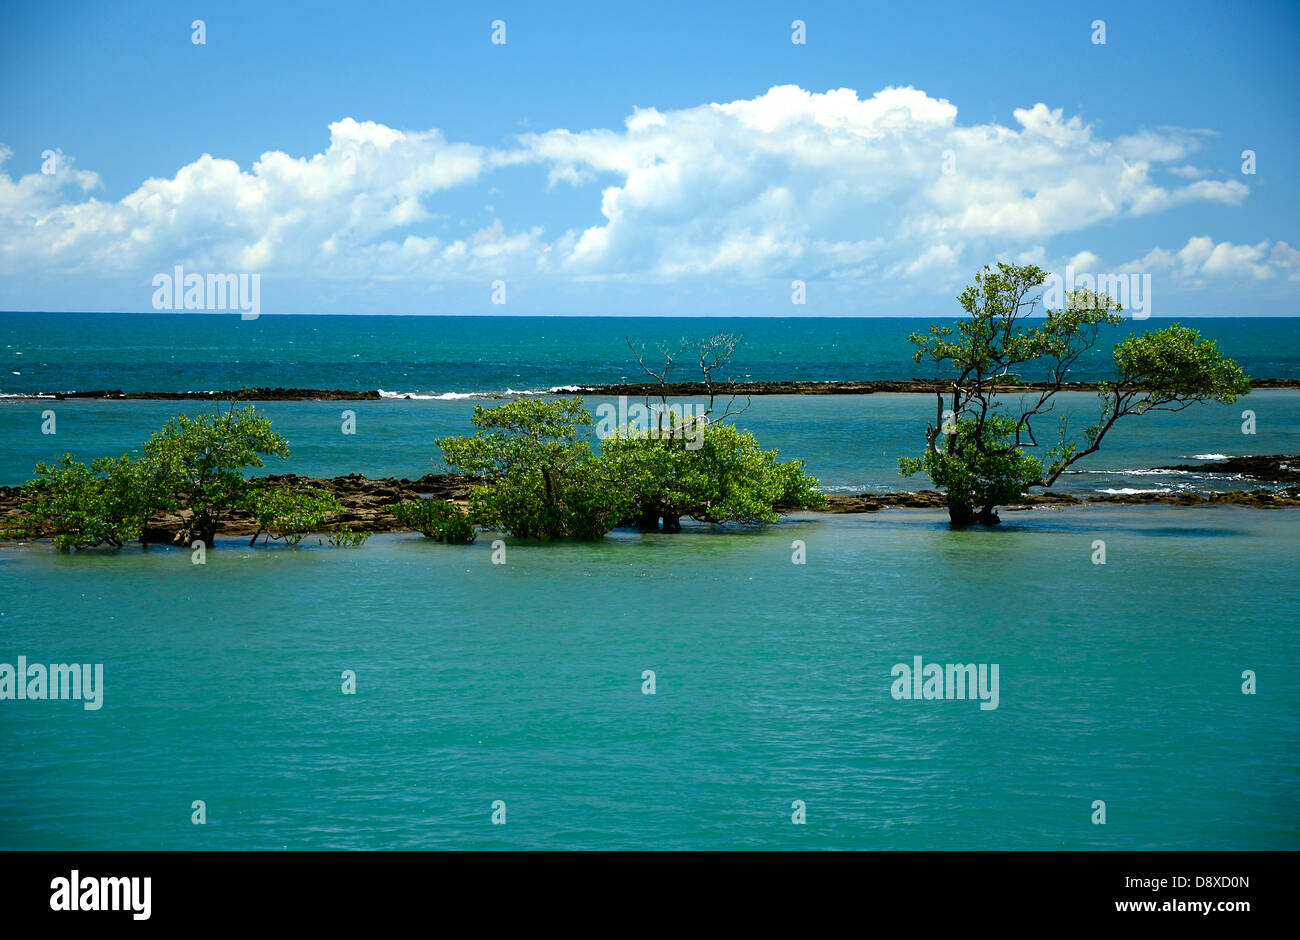 Spiaggia del brasile immagini e fotografie stock ad alta risoluzione - Alamy